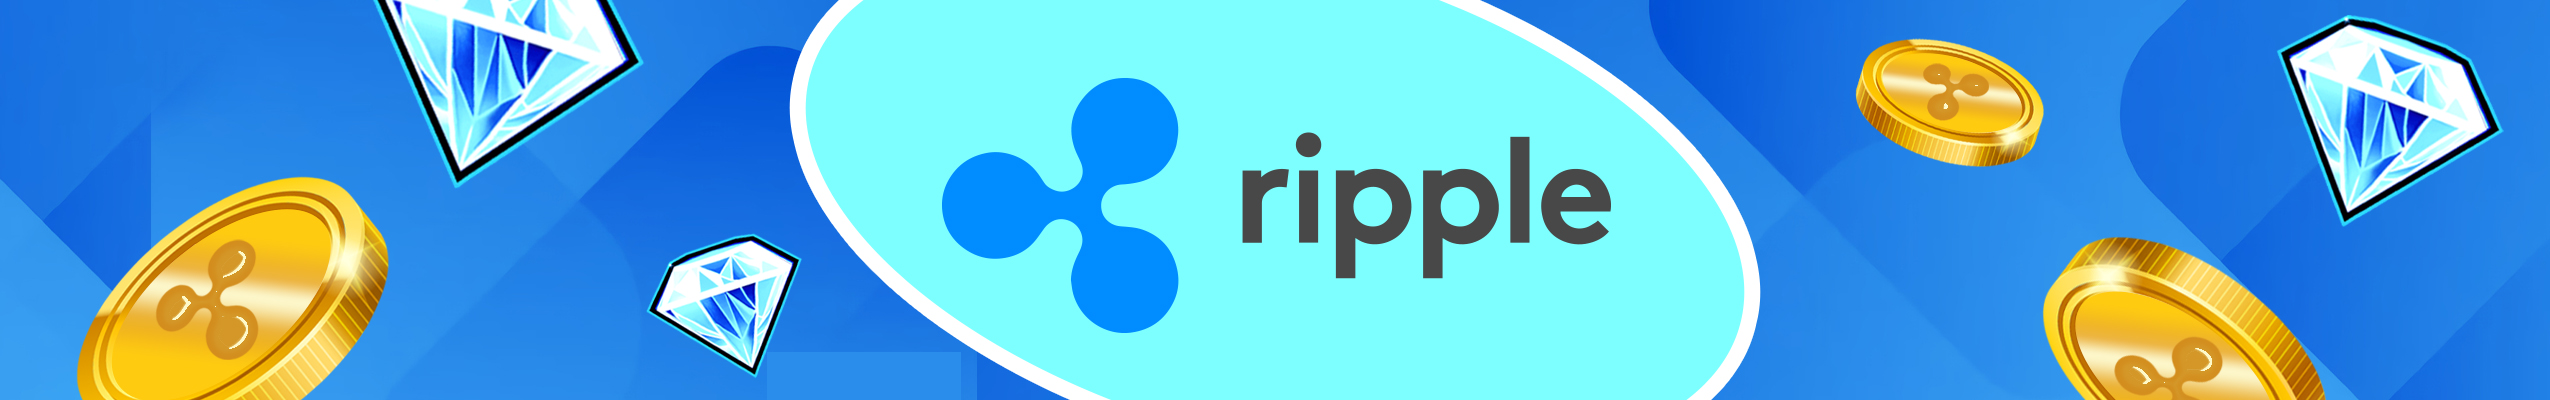 ripple hero banner mit logo, fliegende ripple münzen und diamanten